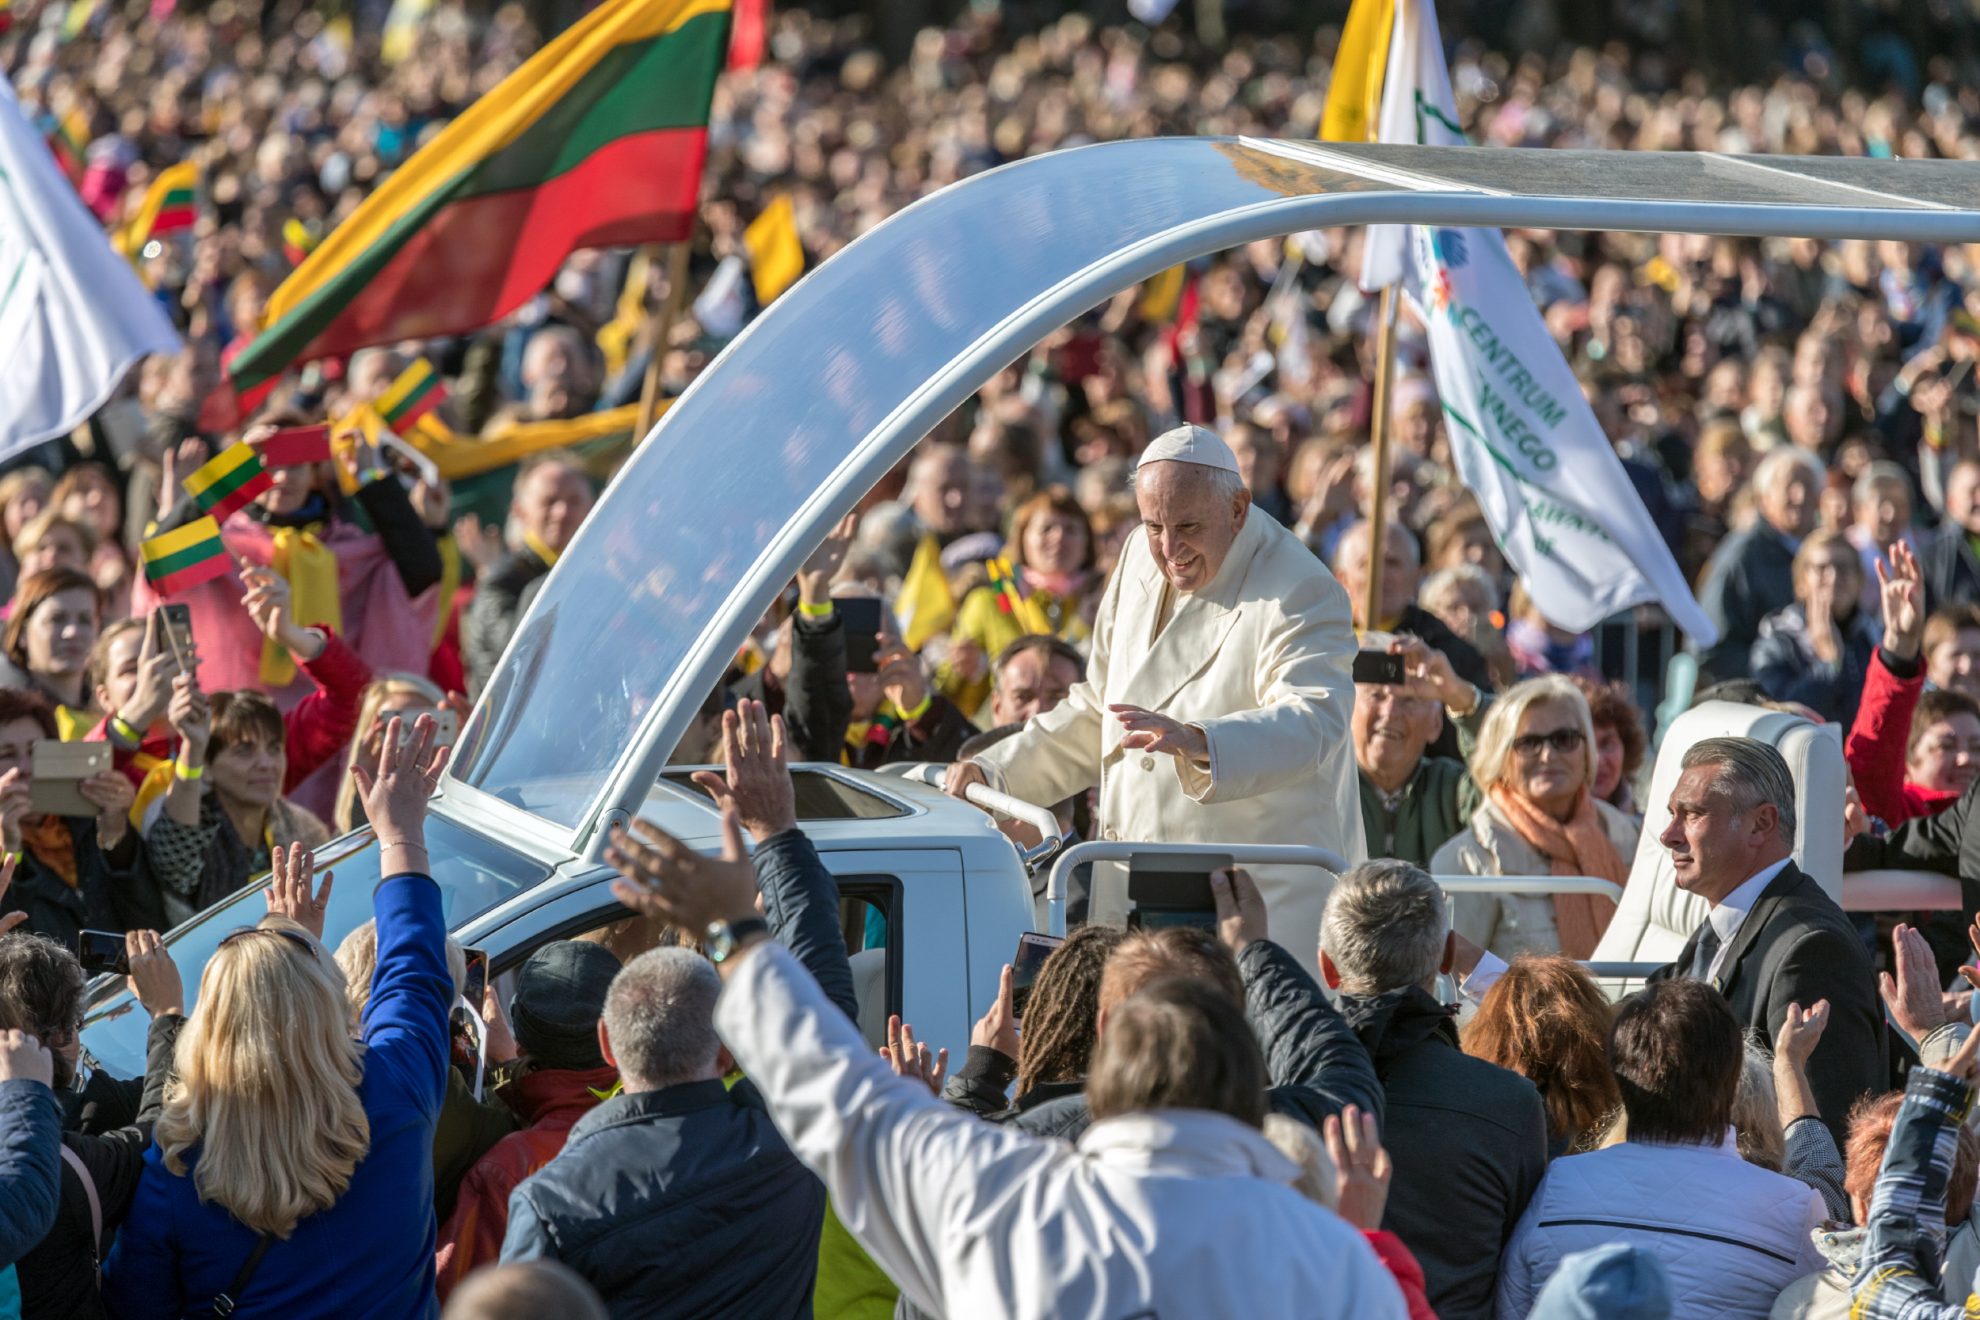 Šį savaitgalį Lietuva gyveno popiežiaus Pranciškaus istorinio vizito nuotaikomis. Į kvietimą maldai atsiliepė tūkstančiai tikinčiųjų iš visos Lietuvos. Su kokiomis emocijomis iš susitikimo su popiežiumi Vilniuje ir Kaune grįžo panevėžiečiai?